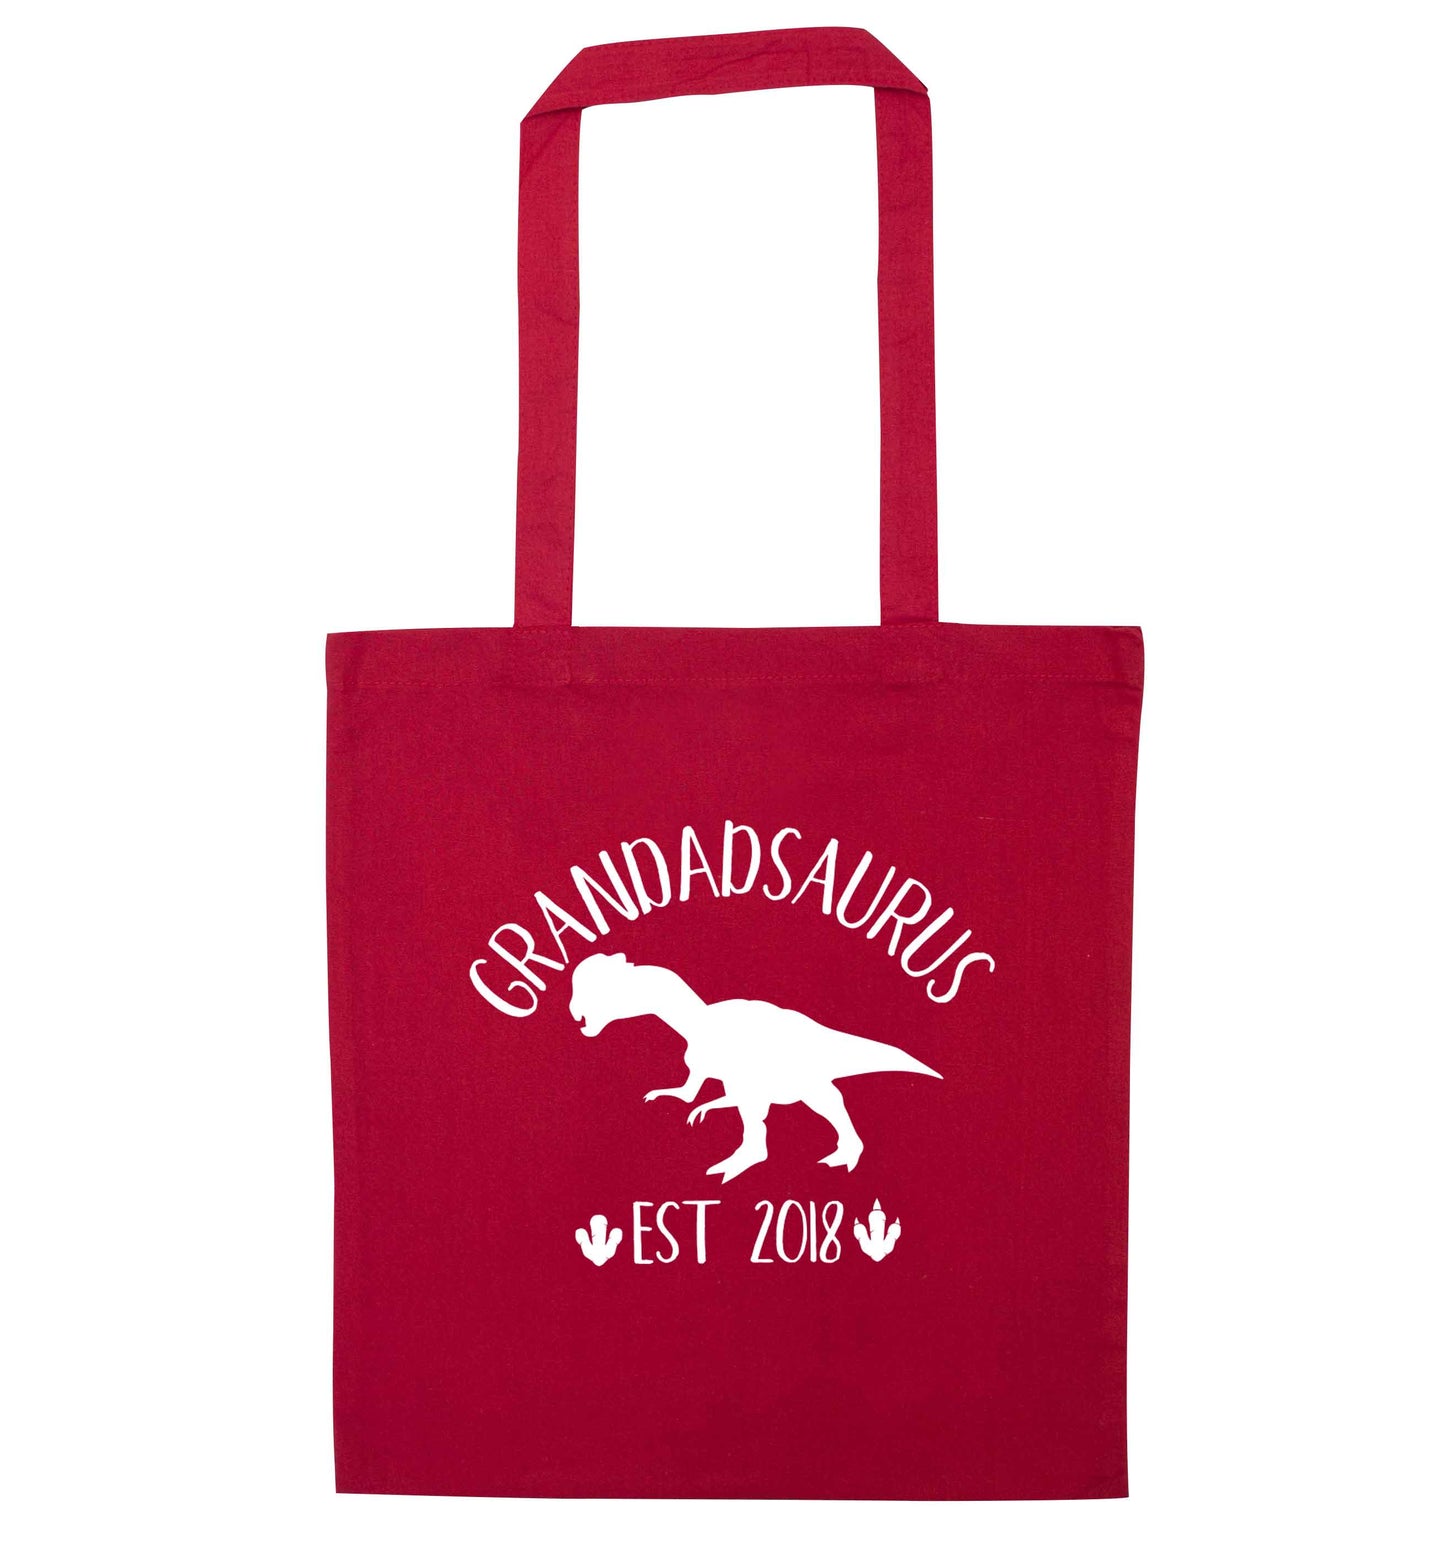 Personalised grandadsaurus since (custom date) red tote bag